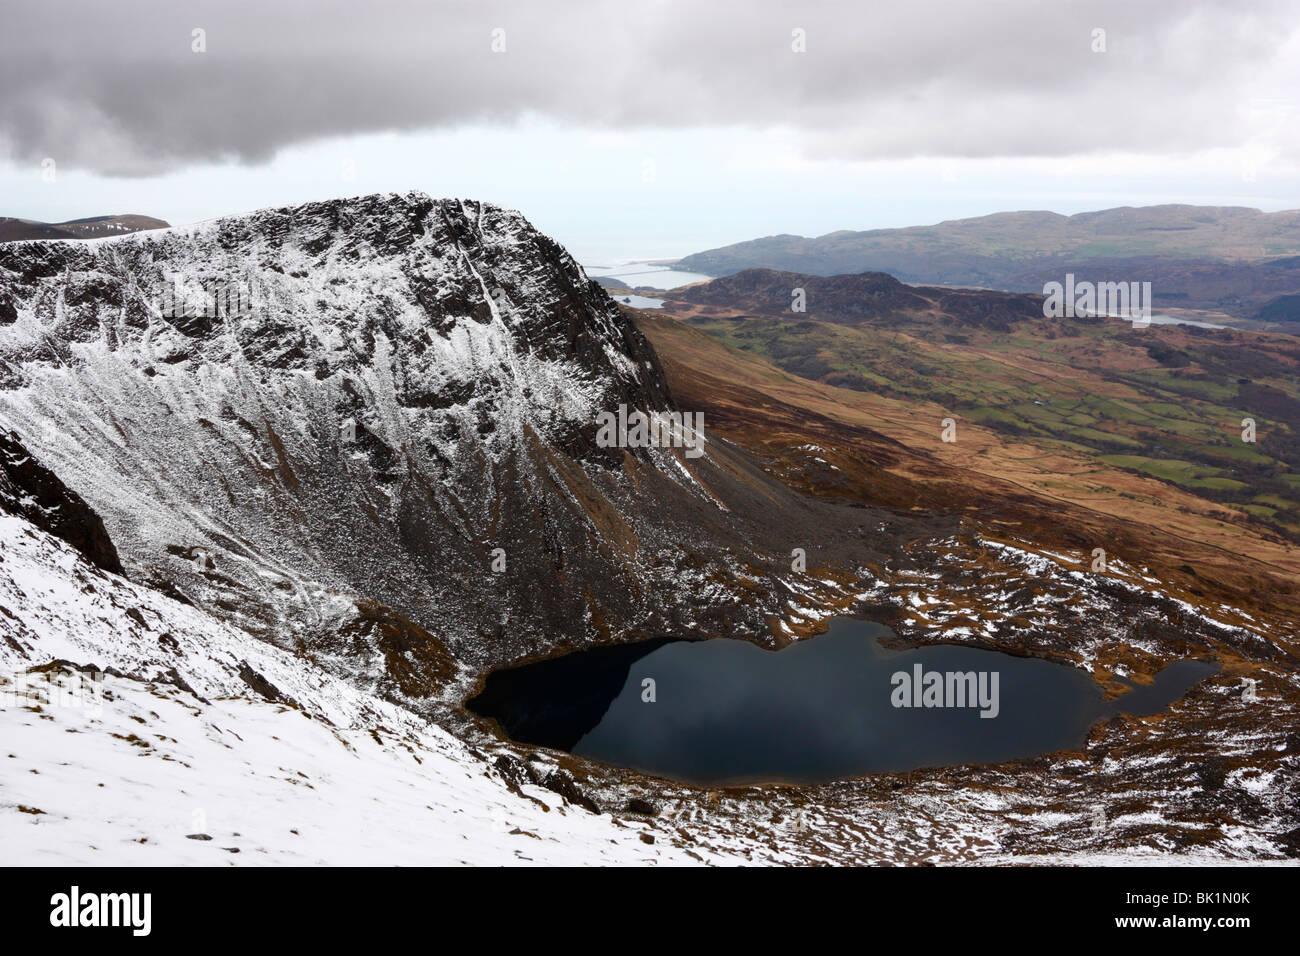 The peak of Cyfrwy and the Cyfrwy Arete rise above Llyn y Gadair on Cadair Idris, Snowdonia Stock Photo